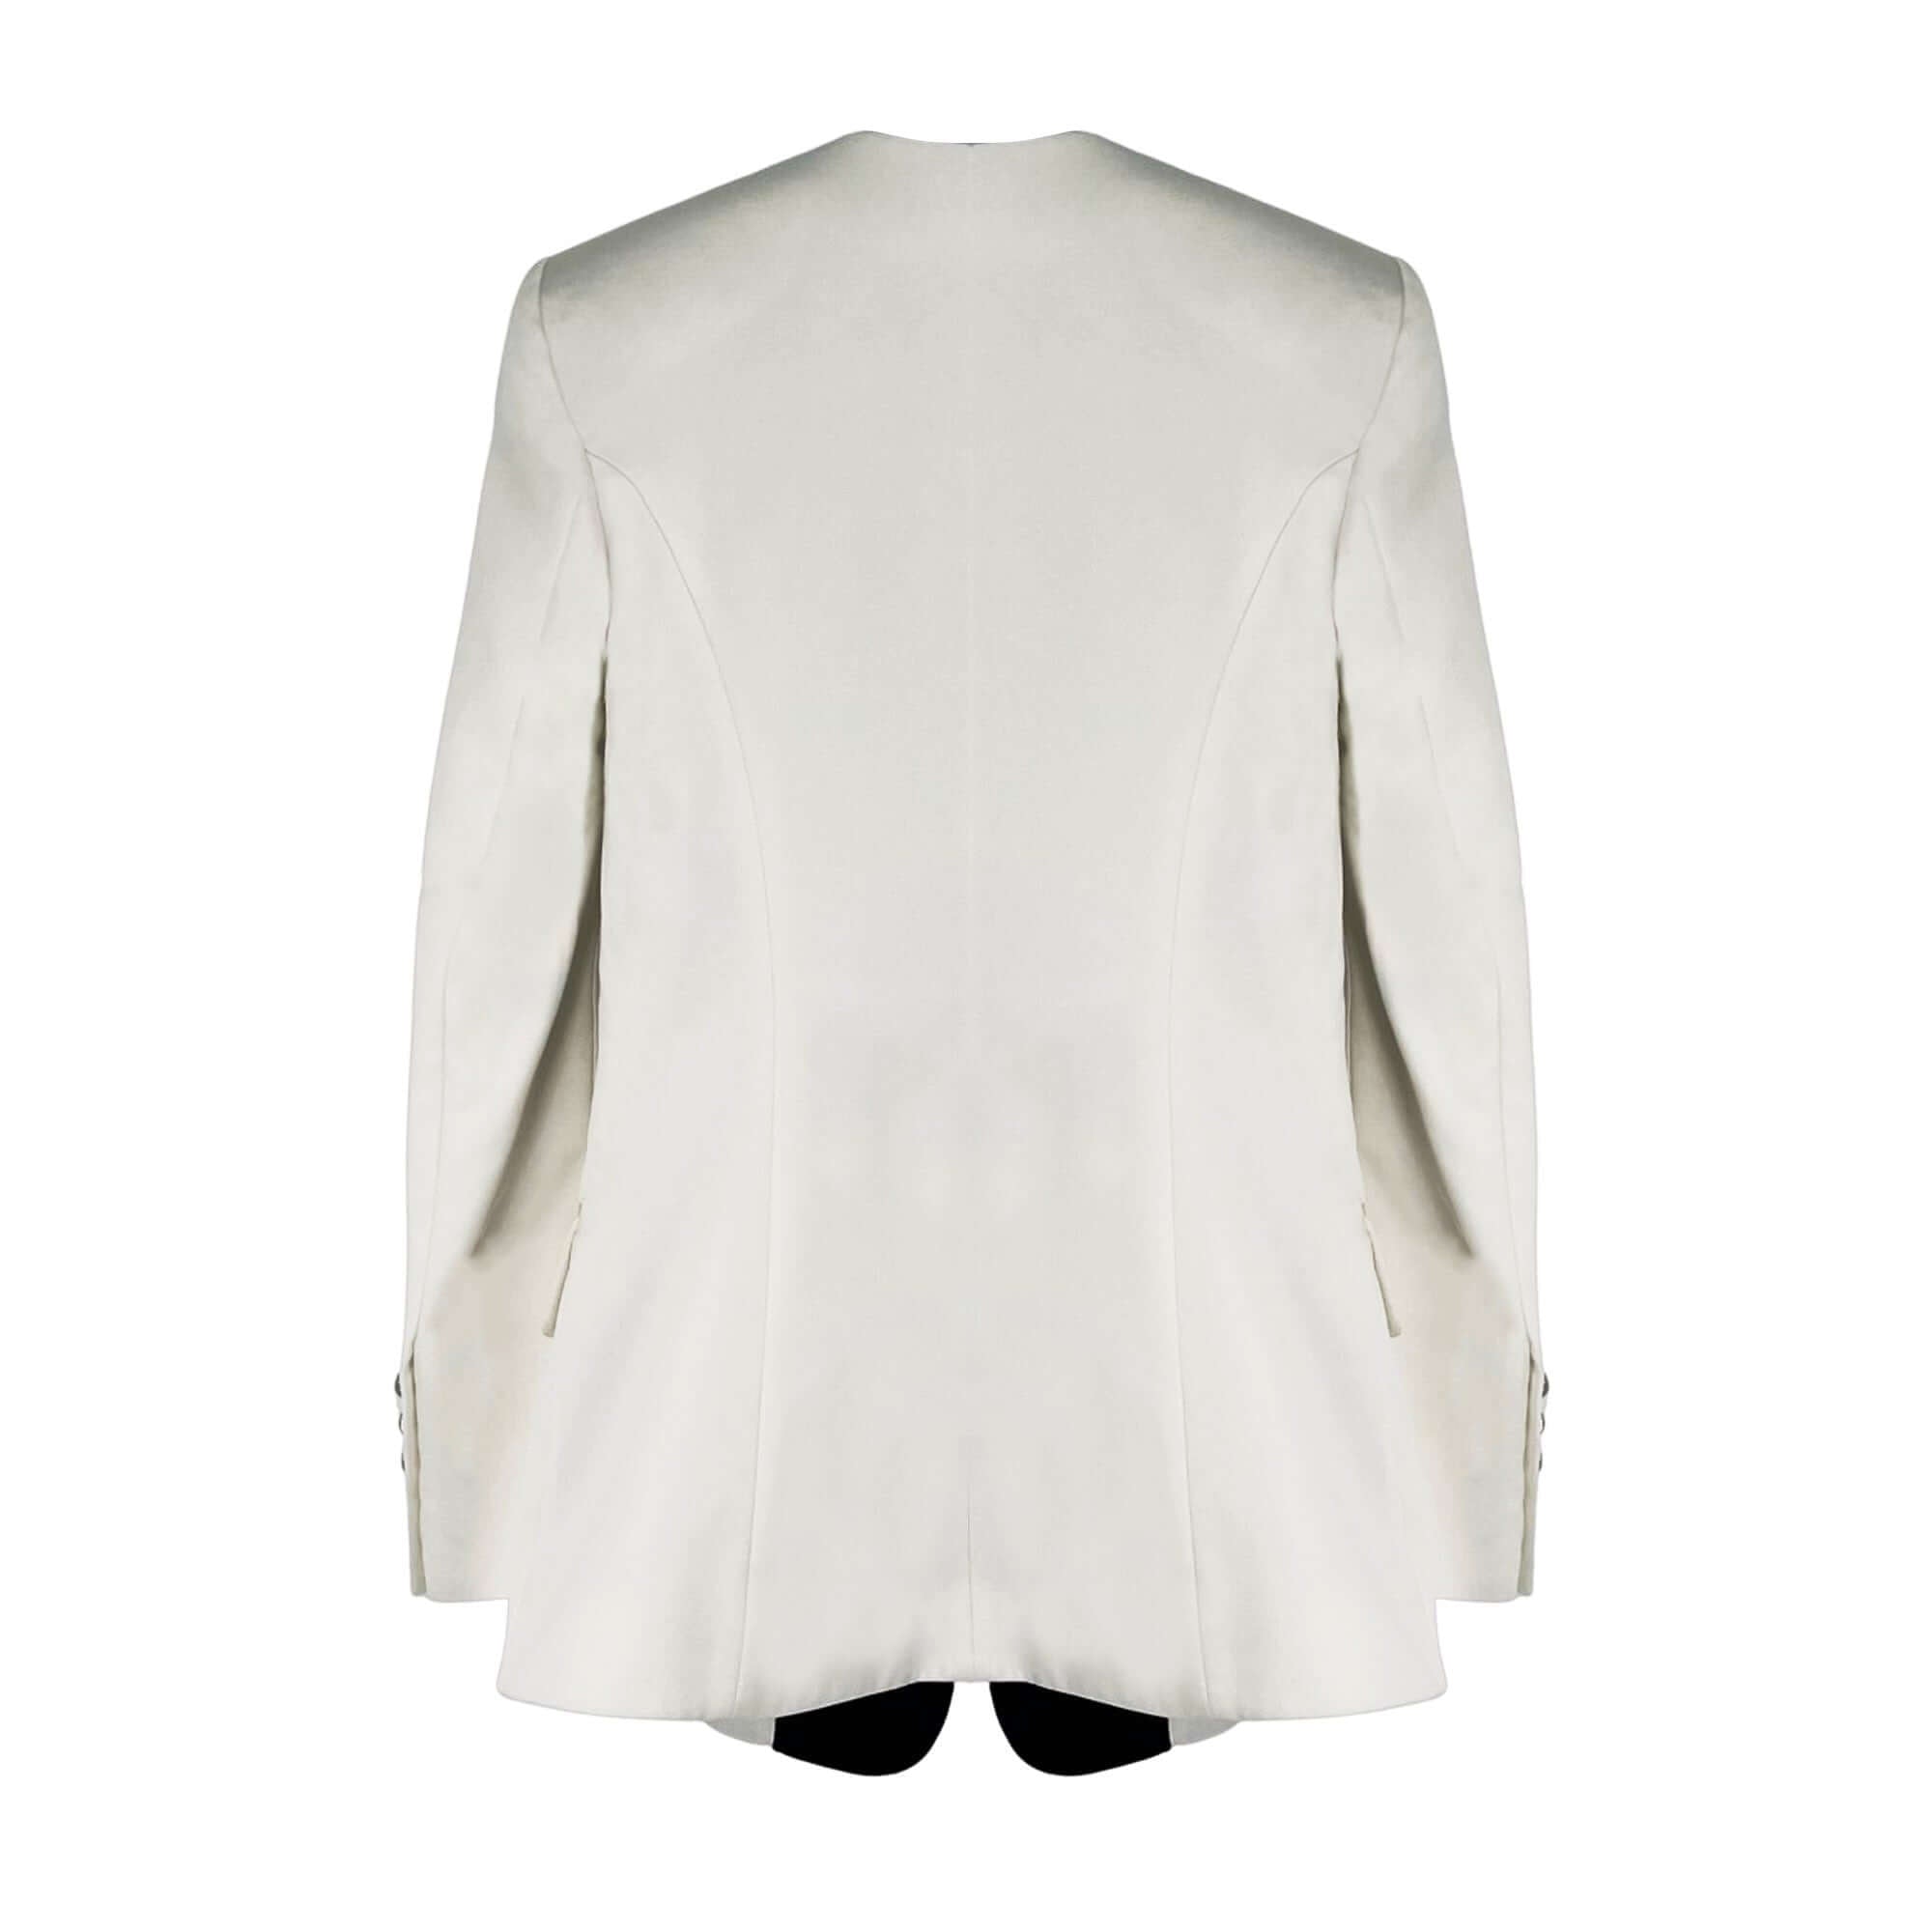 Balmain Black Paris white tuxedo blazer jacket